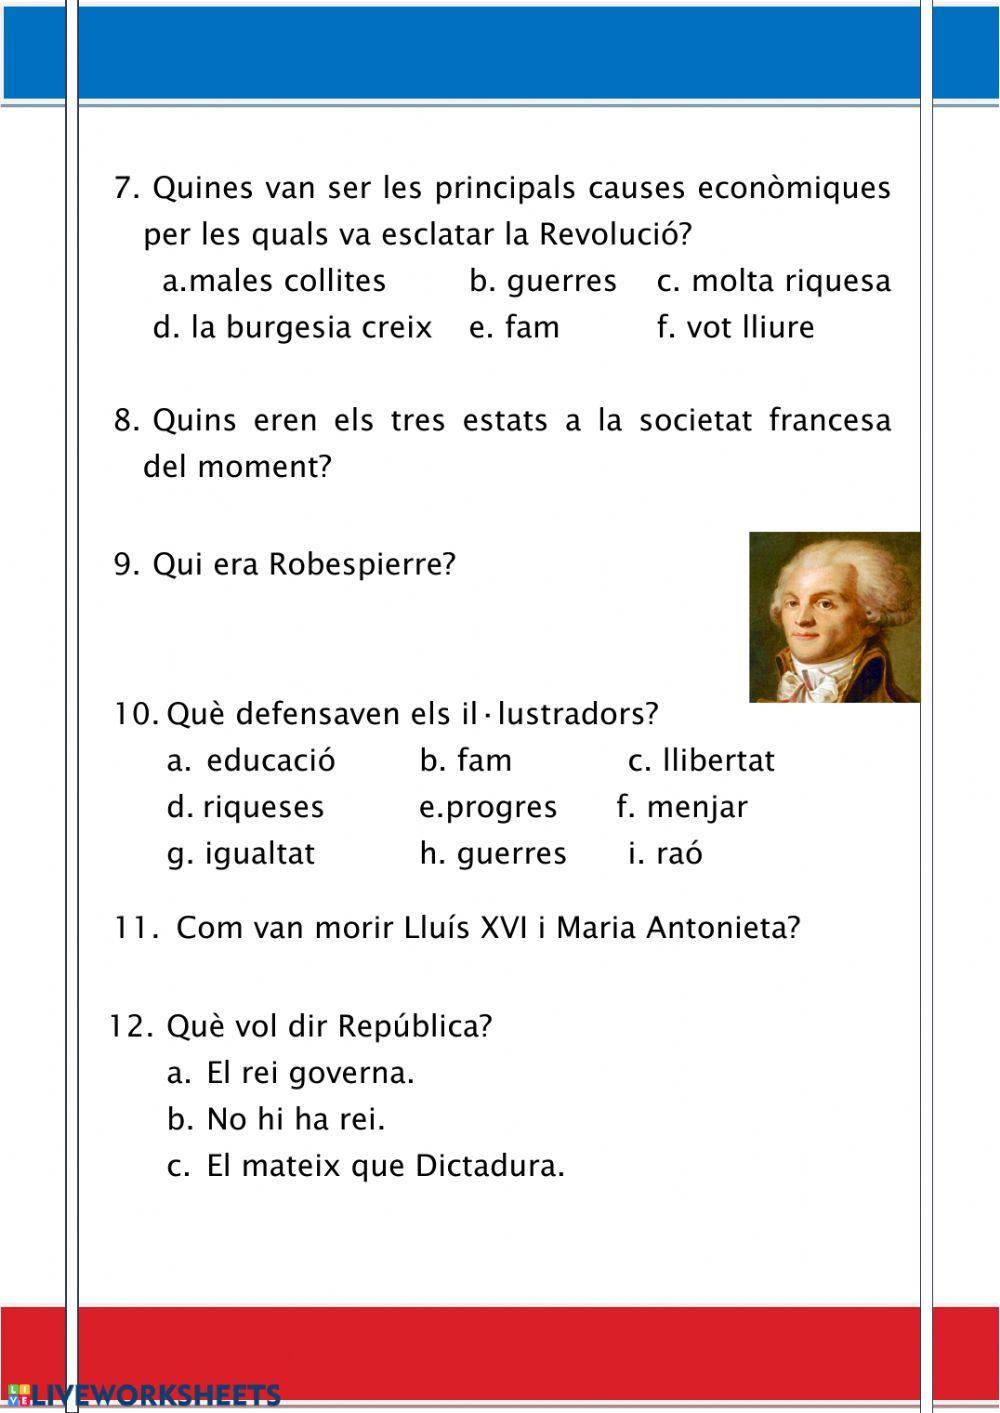 La revolució francesa